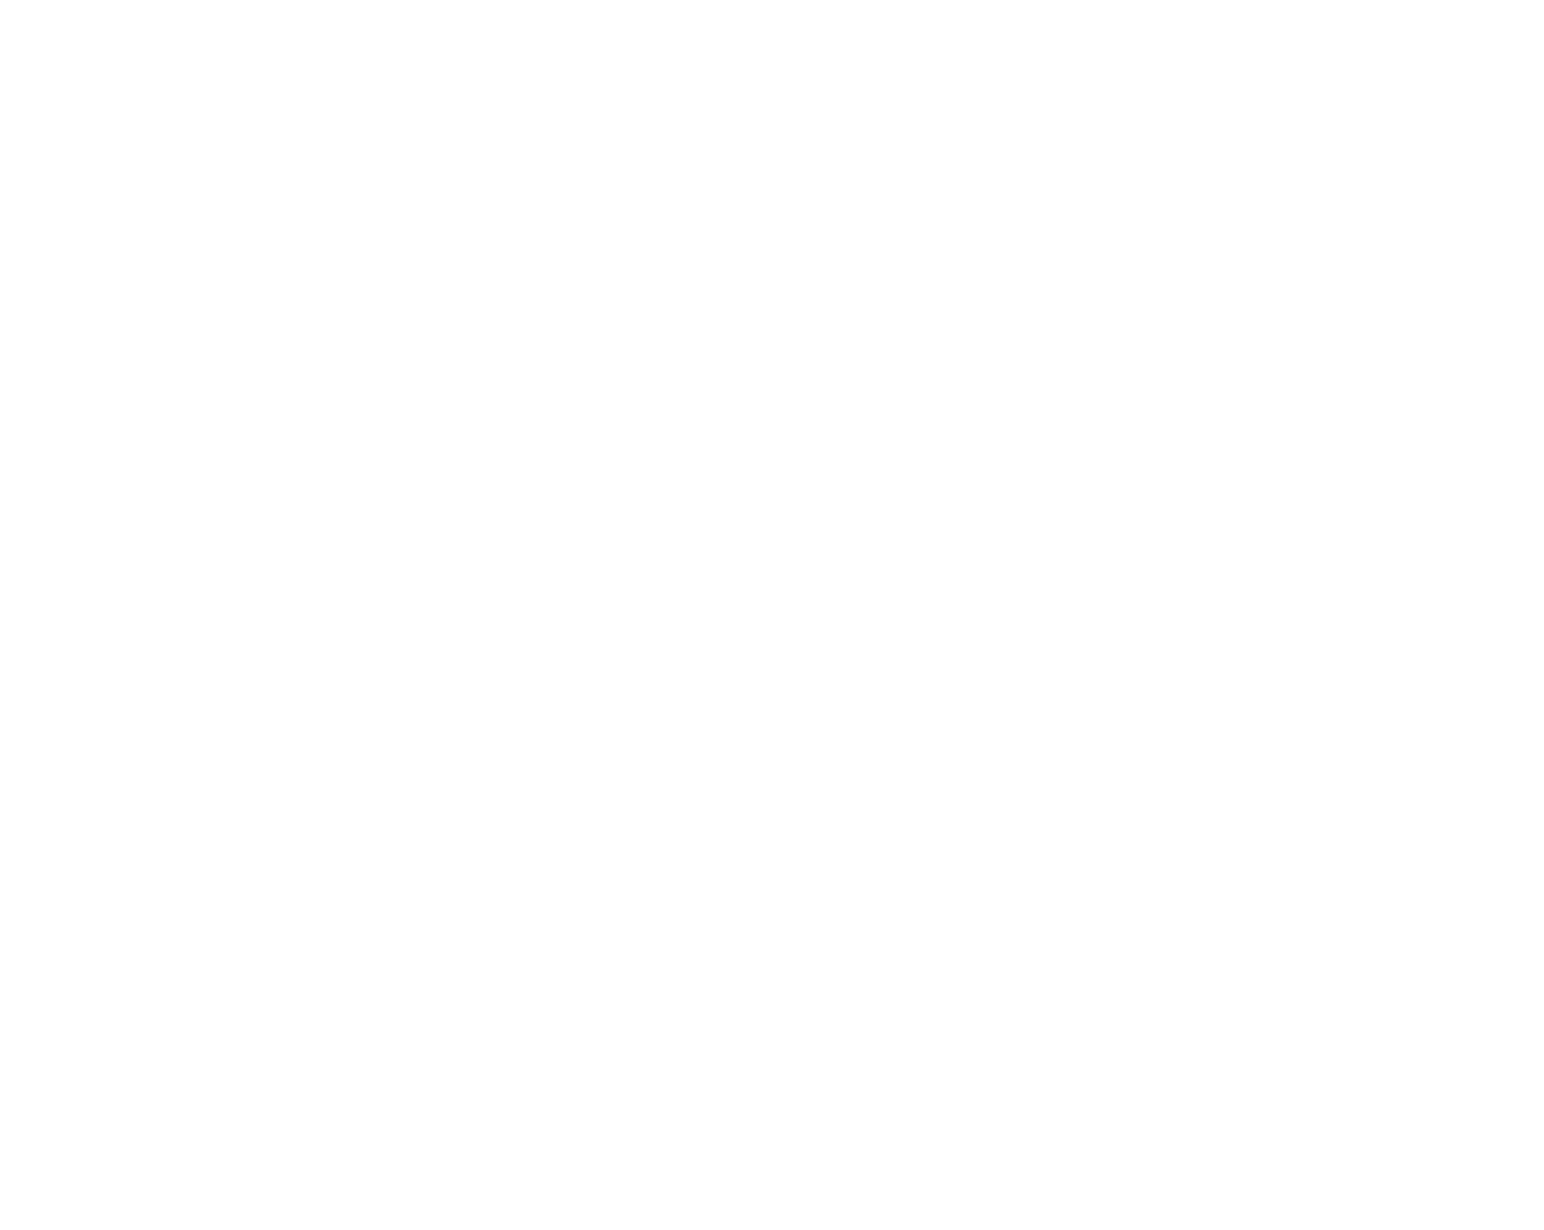 Kraken logo for dark backgrounds (transparent PNG)